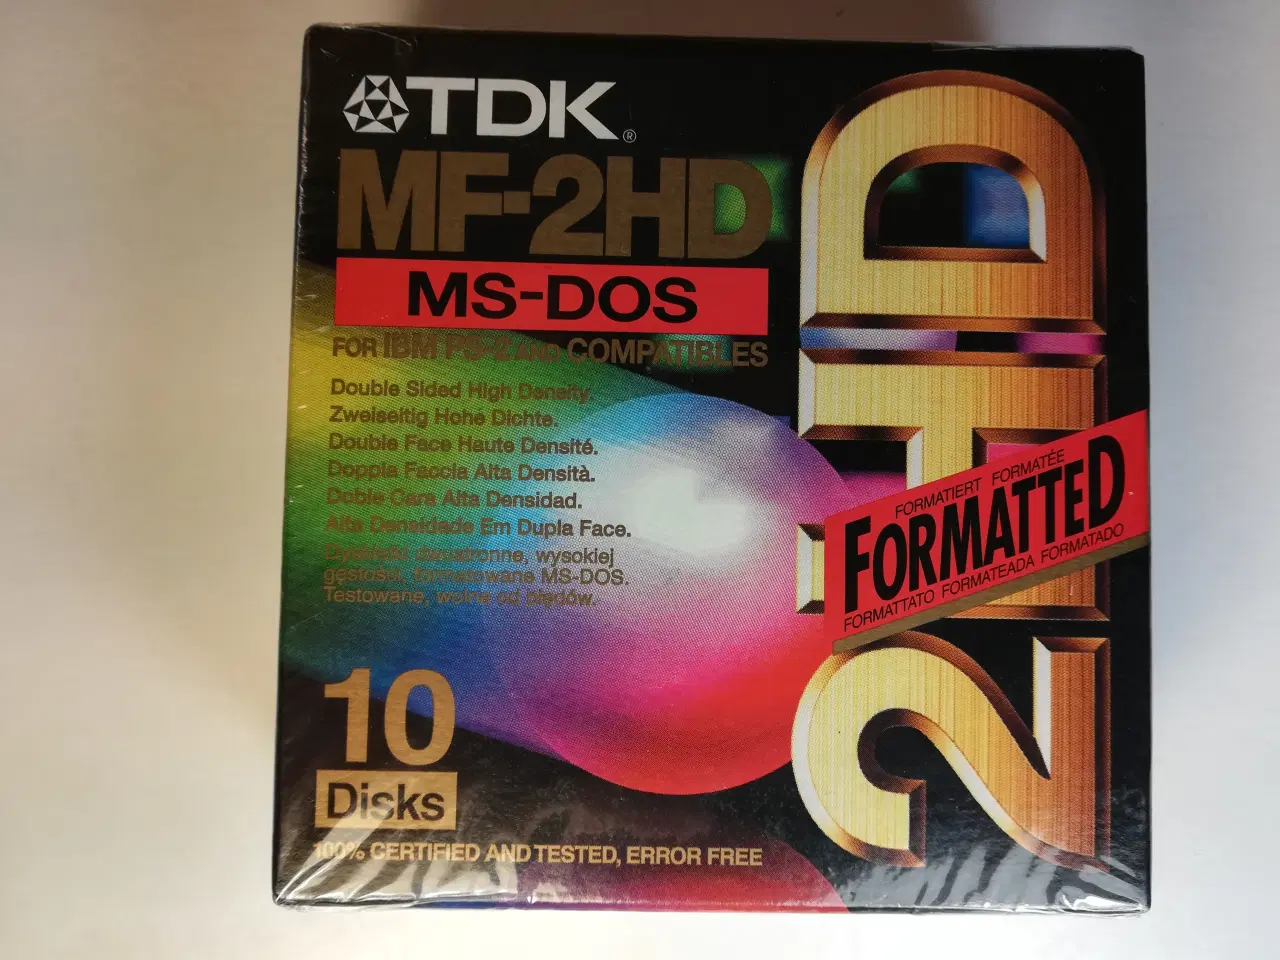 Billede 1 - TDK MF-2HD Floppy Disks, 10 stk. - NYE